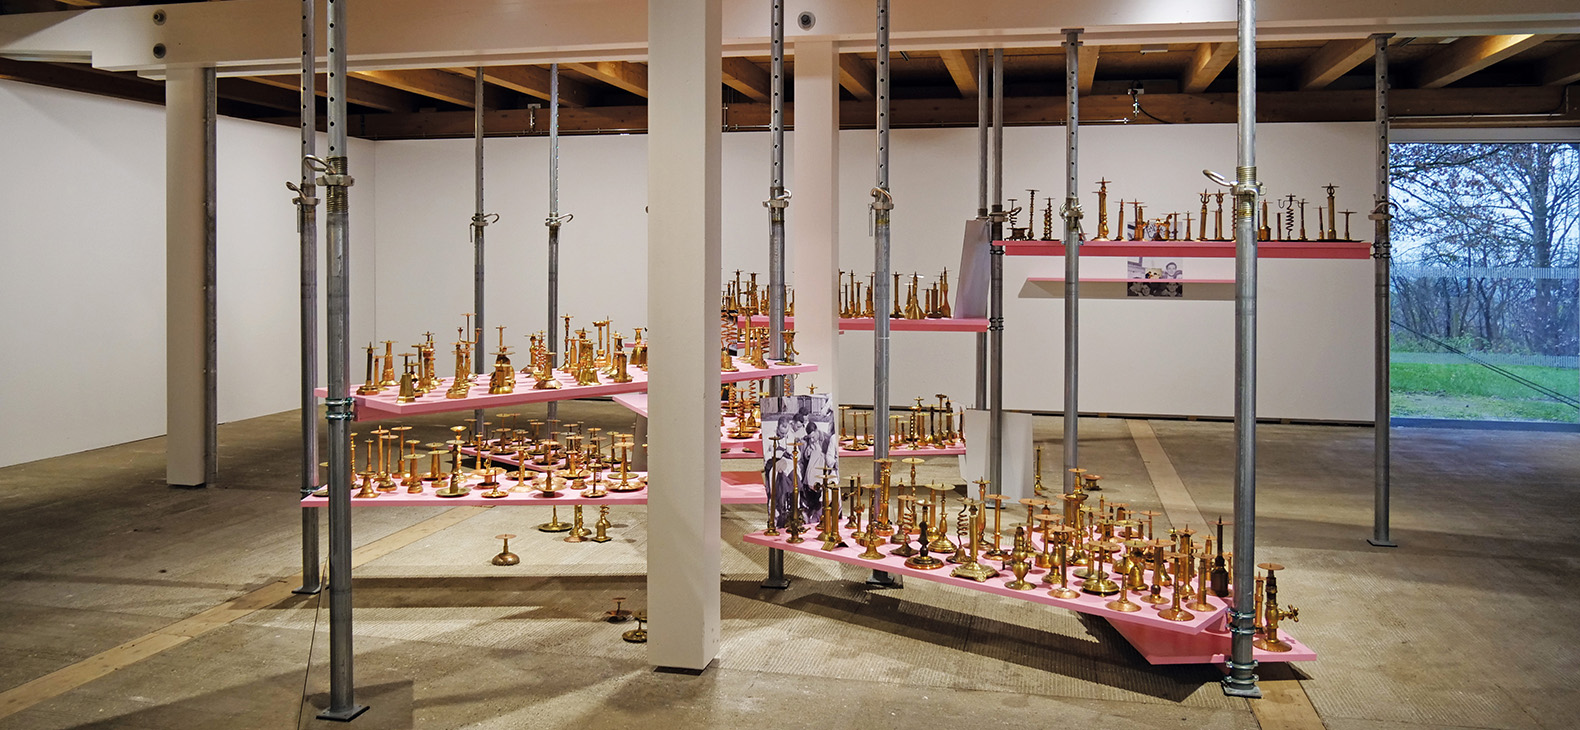 Blick in die Ausstellung; Installation "Die Aufstellung" von Rebekka Bauer mit mehreren hundert Metallobjekten auf pinkfarbenen Brettern zwischen Baustützen sowie freistehenden Fotoplatten